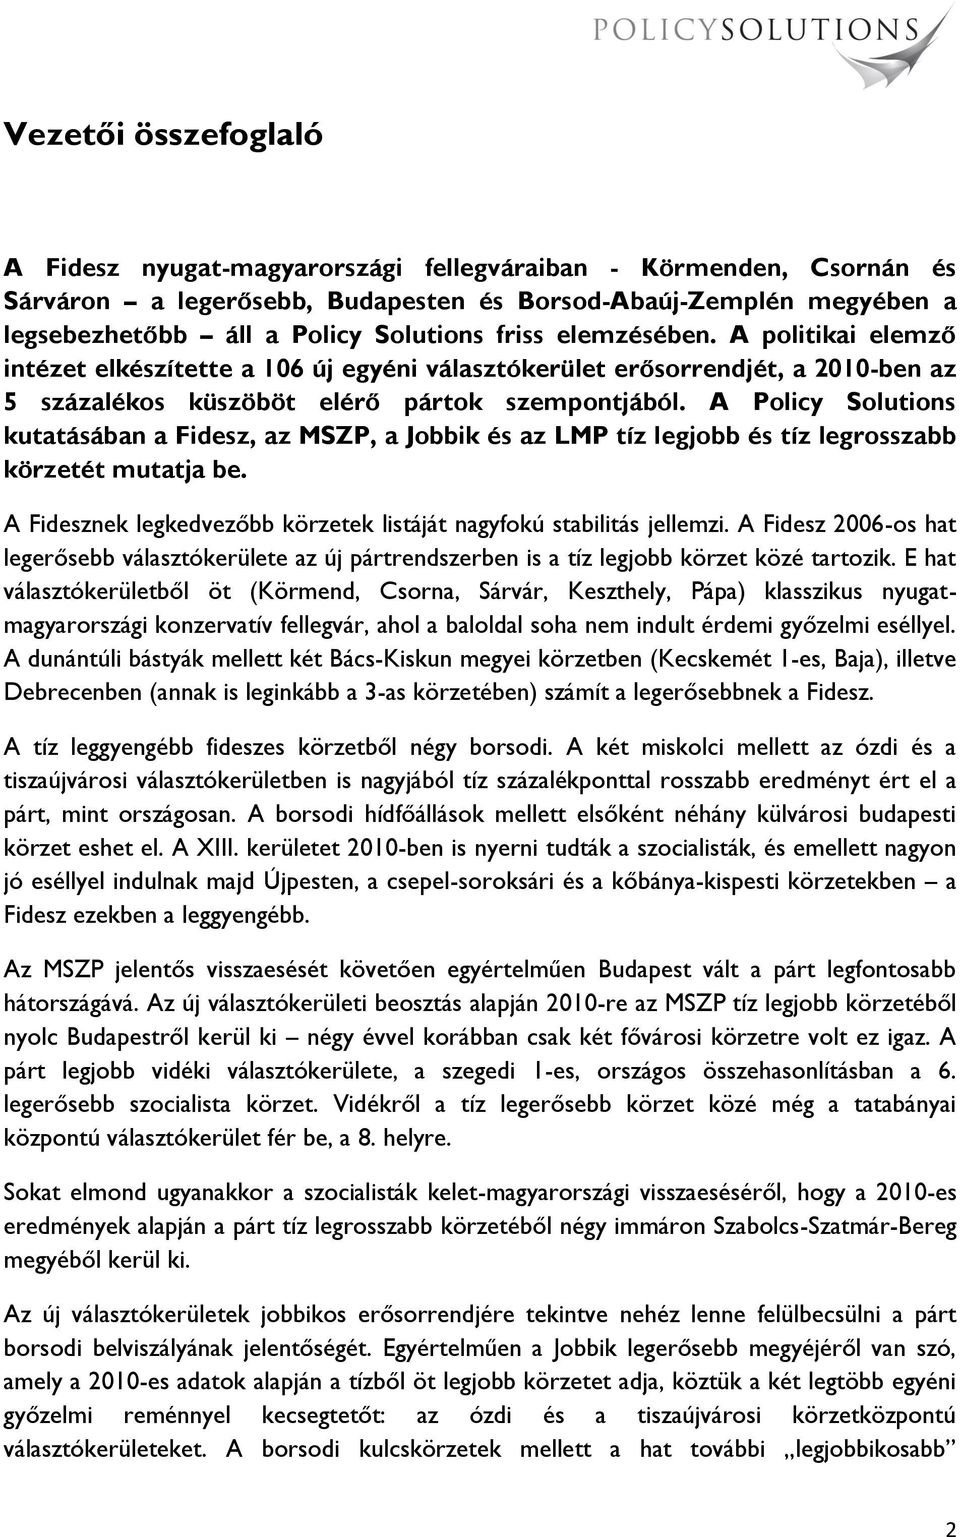 A Policy Solutions kutatásában a Fidesz, az MSZP, a Jobbik és az LMP tíz legjobb és tíz legrosszabb körzetét mutatja be. A Fidesznek legkedvezőbb körzetek listáját nagyfokú stabilitás jellemzi.